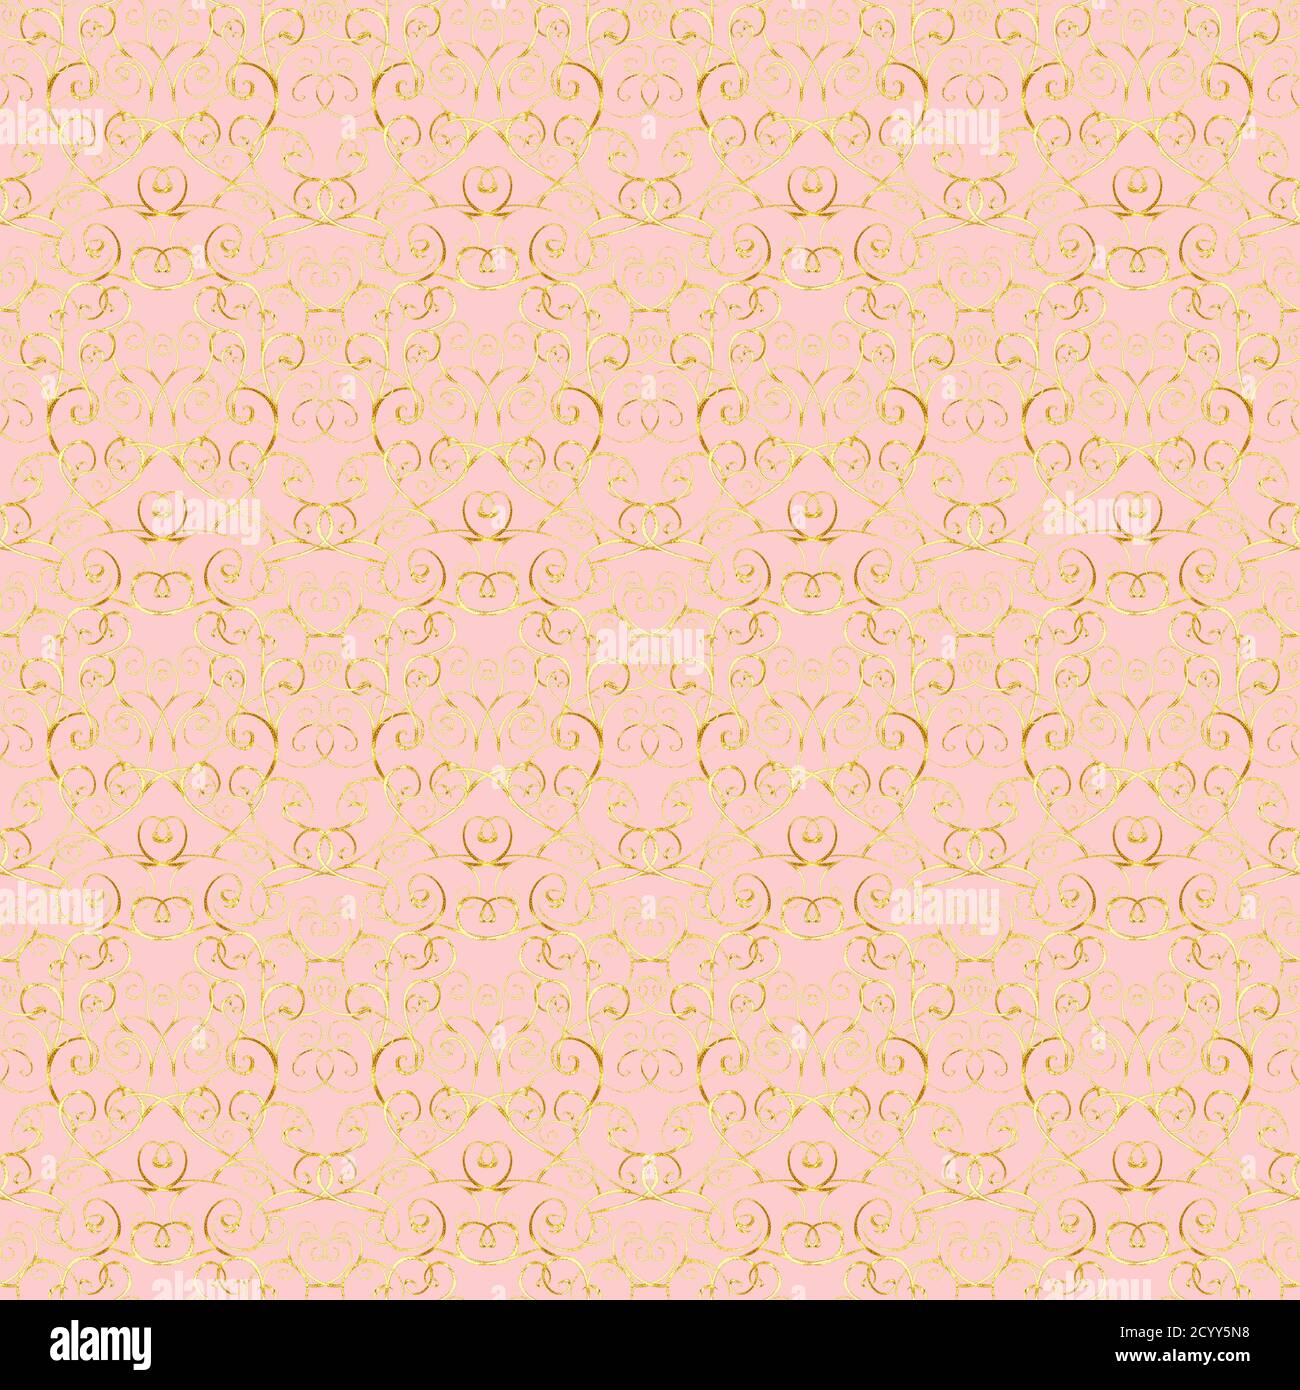 Hoa văn hoàng gia vàng hồng được thiết kế với độ tỉ mỉ và chính xác, biểu thị sự giàu có và quý tộc. Bức ảnh sẽ cho bạn thấy rất rõ các đường nét được tạo hình từng chi tiết độc đáo trên hoa văn này.